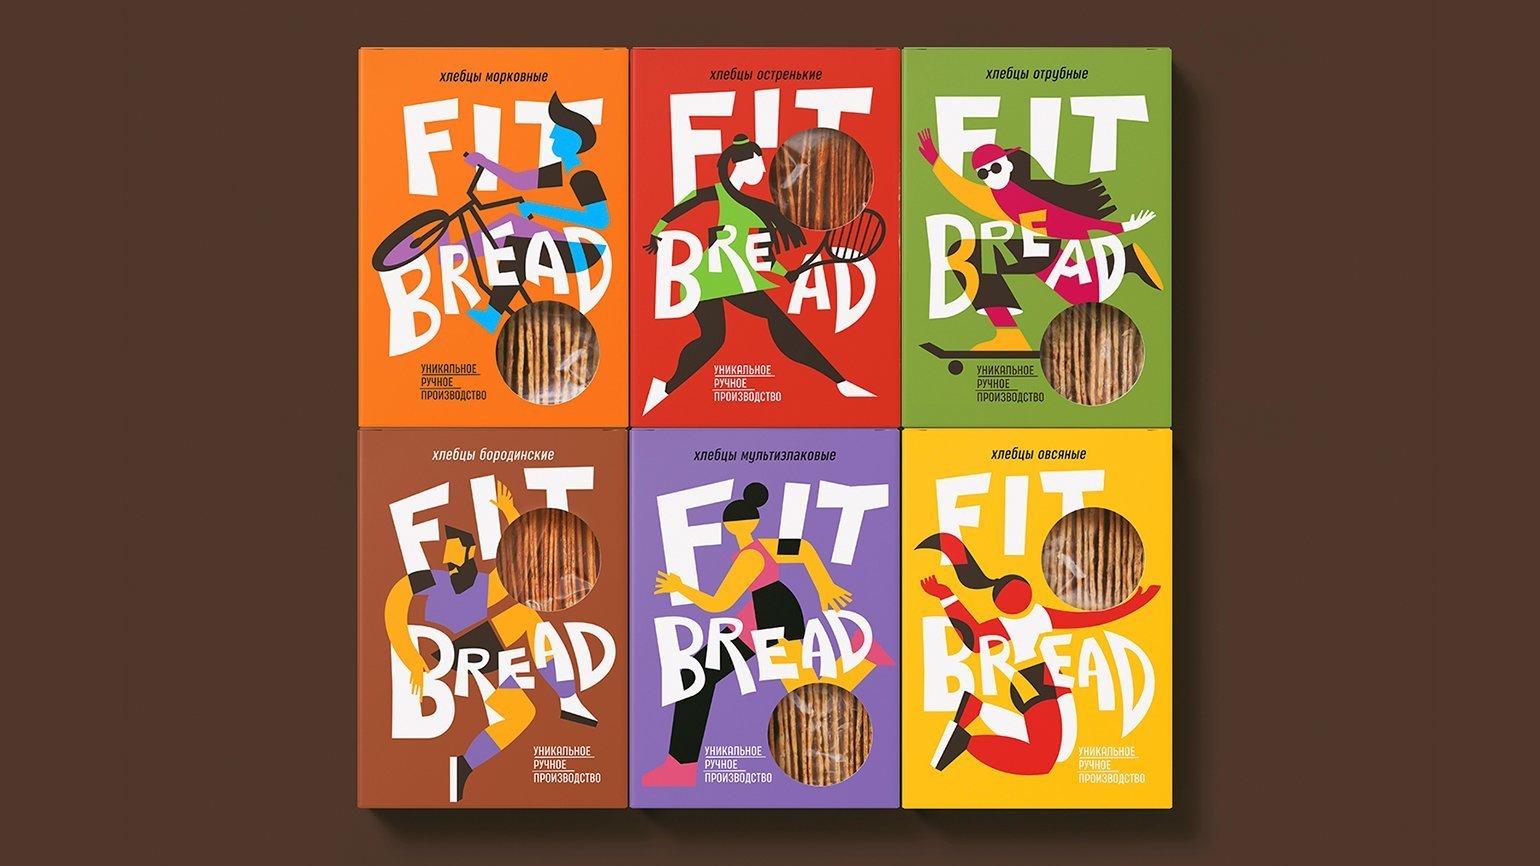 Дизайн упаковки диетических хлебцев. На упаковках изображены условные иллюстрации людей в спортивных позах: на велосипеде, с теннисной ракеткой, на скейтборде, футболисты и баскетболистка